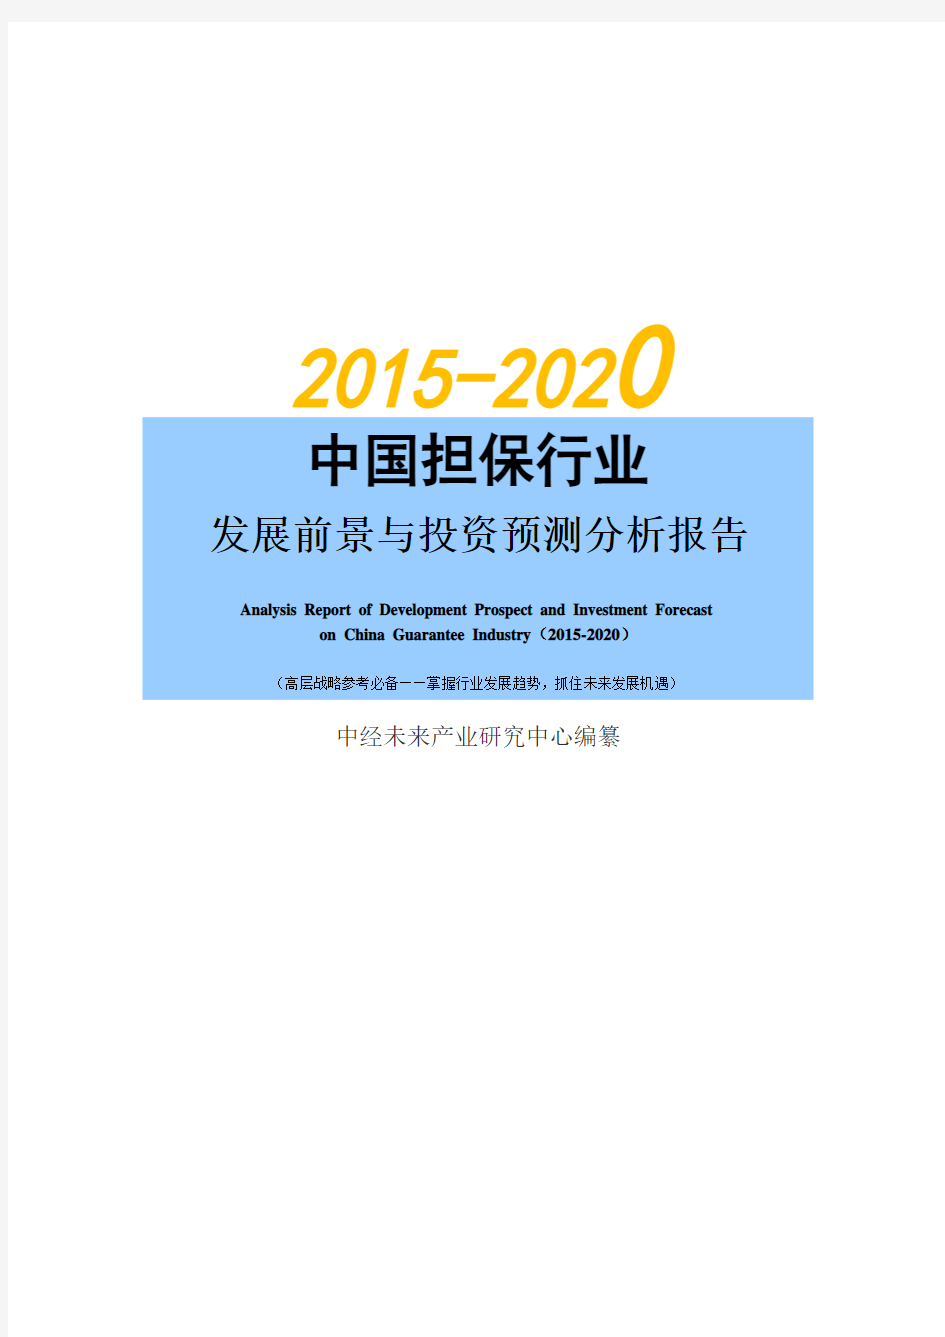 2015-2020年中国担保行业发展前景与投资预测分析报告【中经未来版】